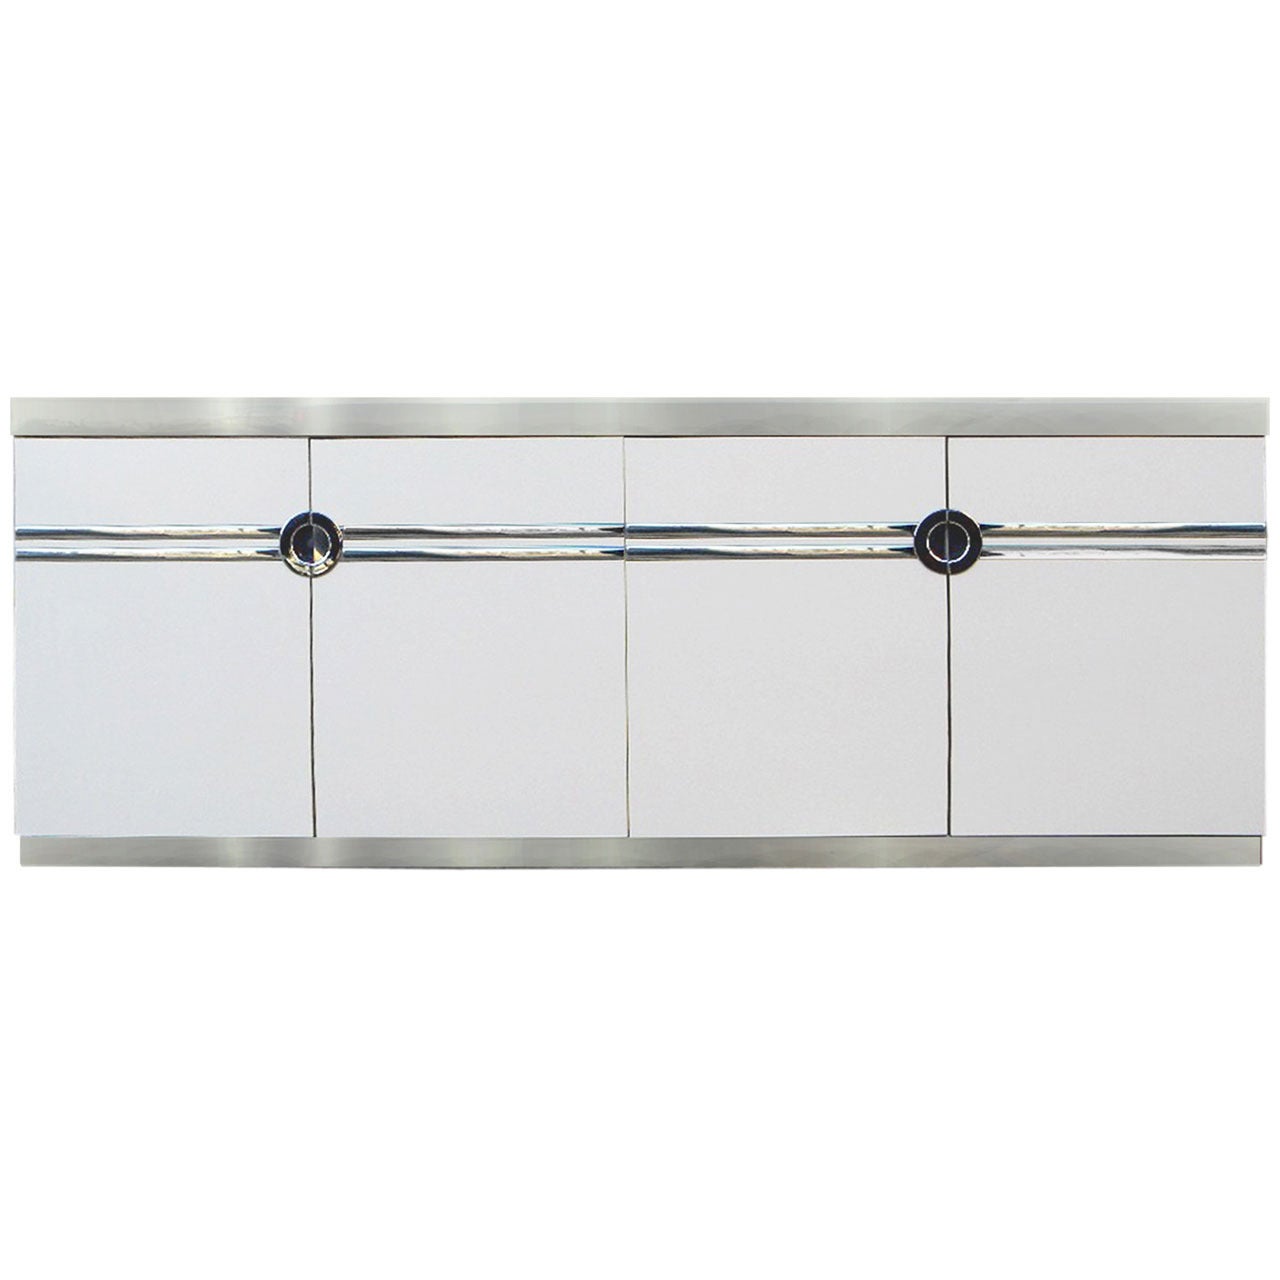 Pierre Cardin Long Dresser Cabinet